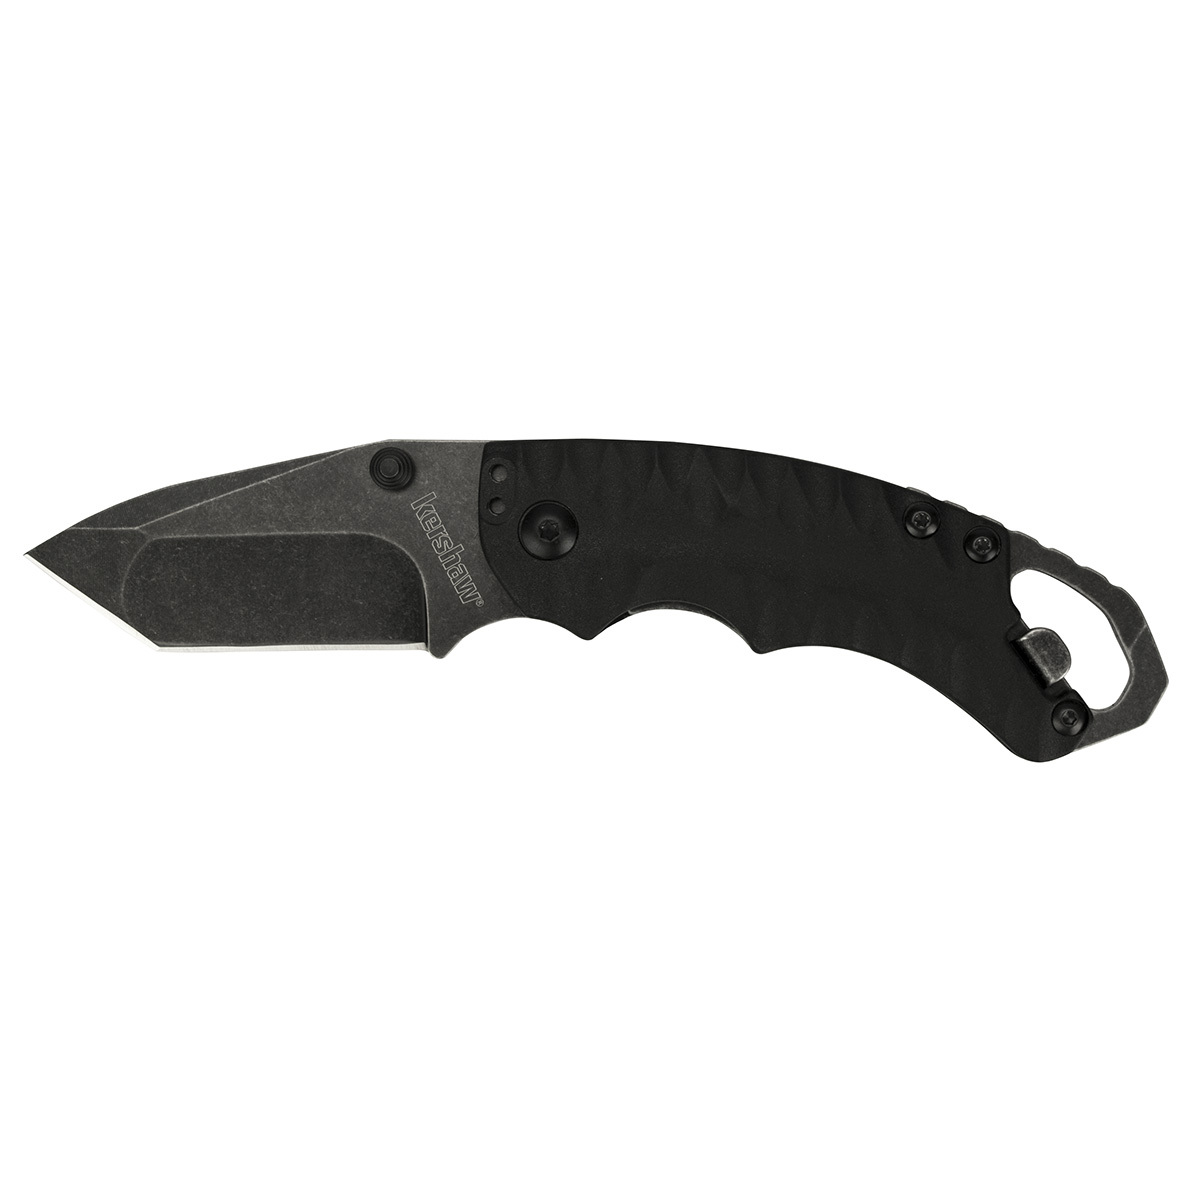 Нож складной Shuffle II - KERSHAW 8750TBLKBW, сталь 8Cr13MoV c покрытием BlackWash™, рукоять термопластик GFN чёрного цвета - фото 1